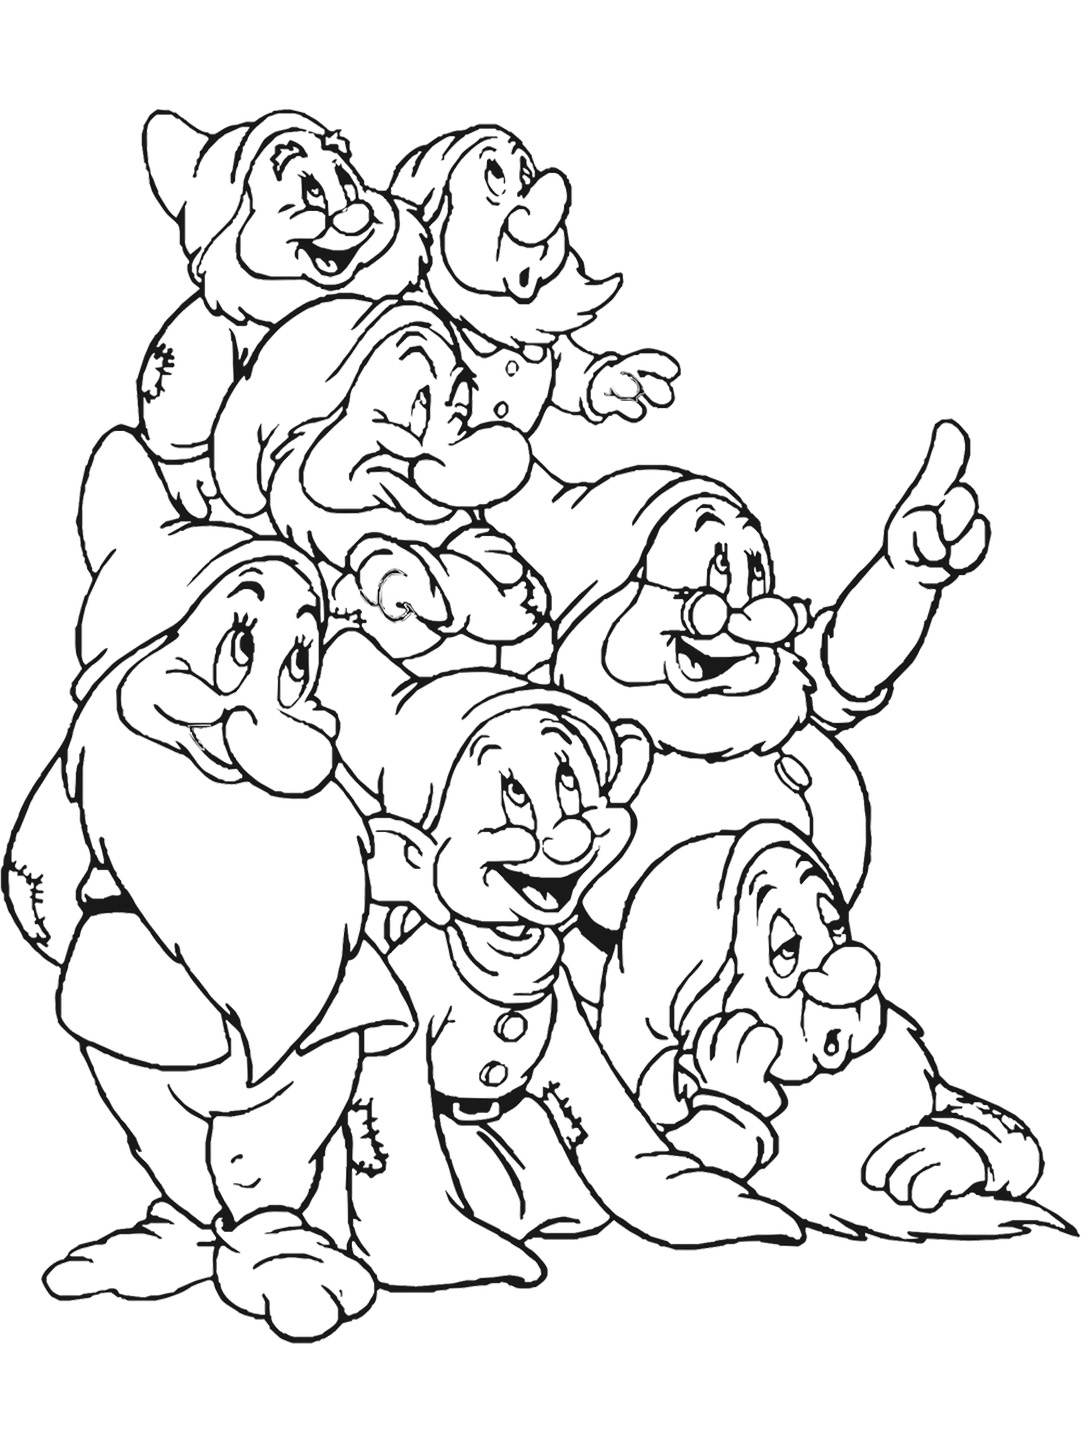 Image des sept nains à colorier